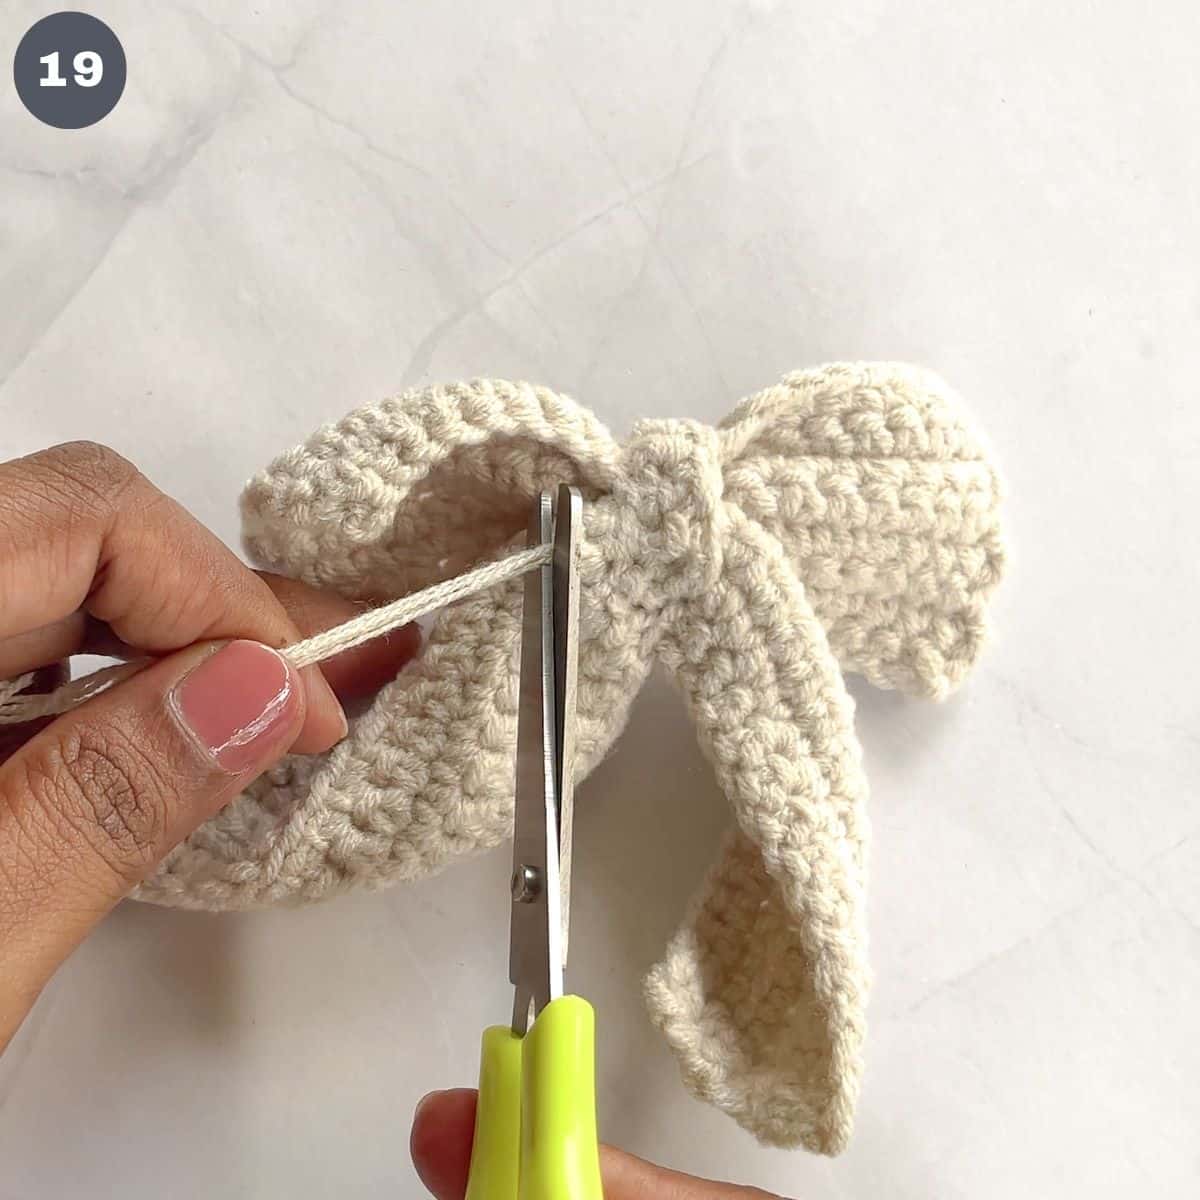 Cutting excess yarn off a crochet bow.